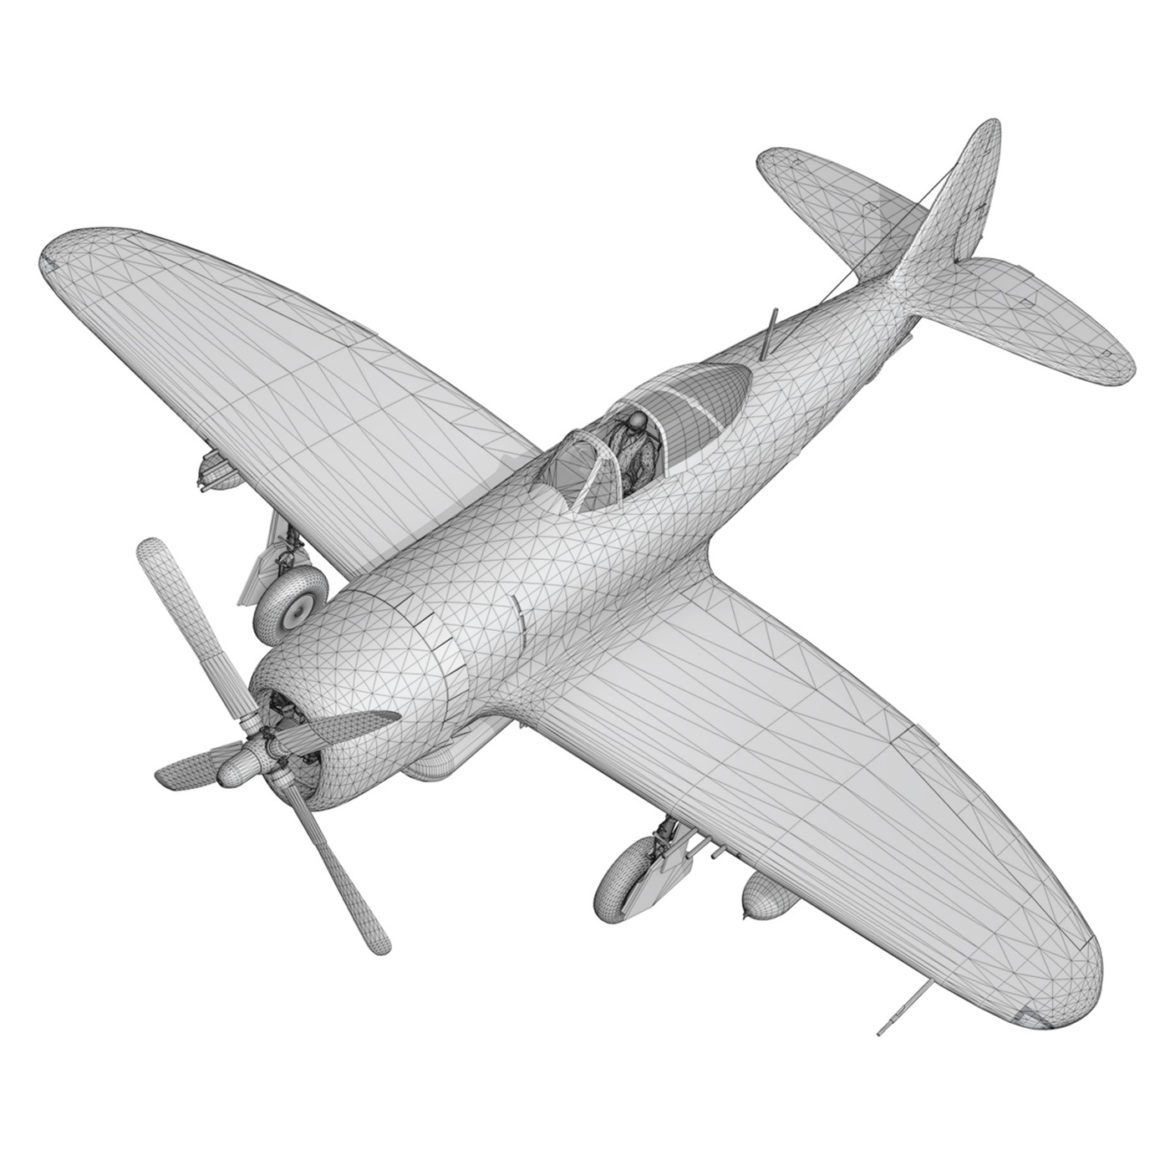 republic p-47m thunderbolt – darling dottie 3d model 3ds c4d lwo lw lws obj fbx 303855